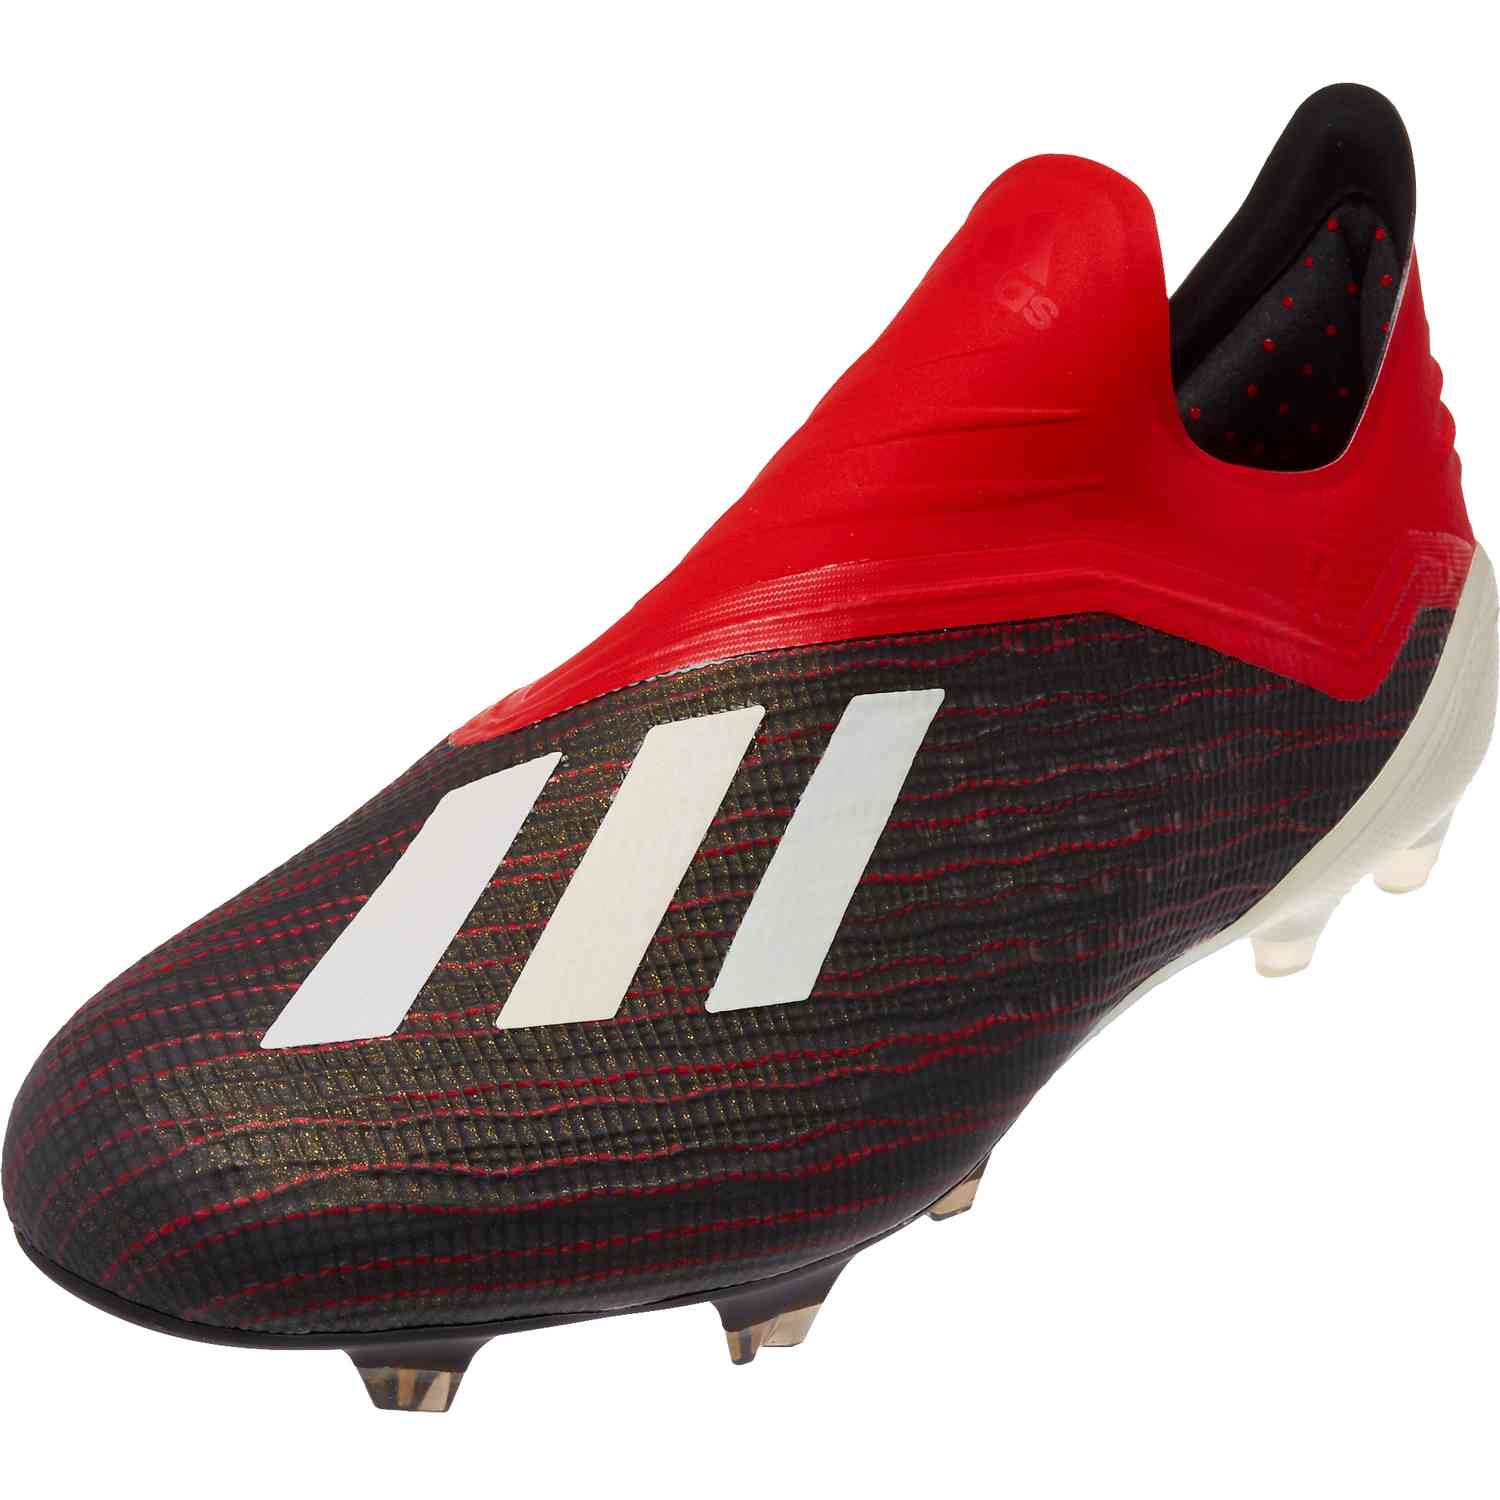 cortesía opción músculo adidas X18 - adidas Initiator Pack - SoccerPro.com